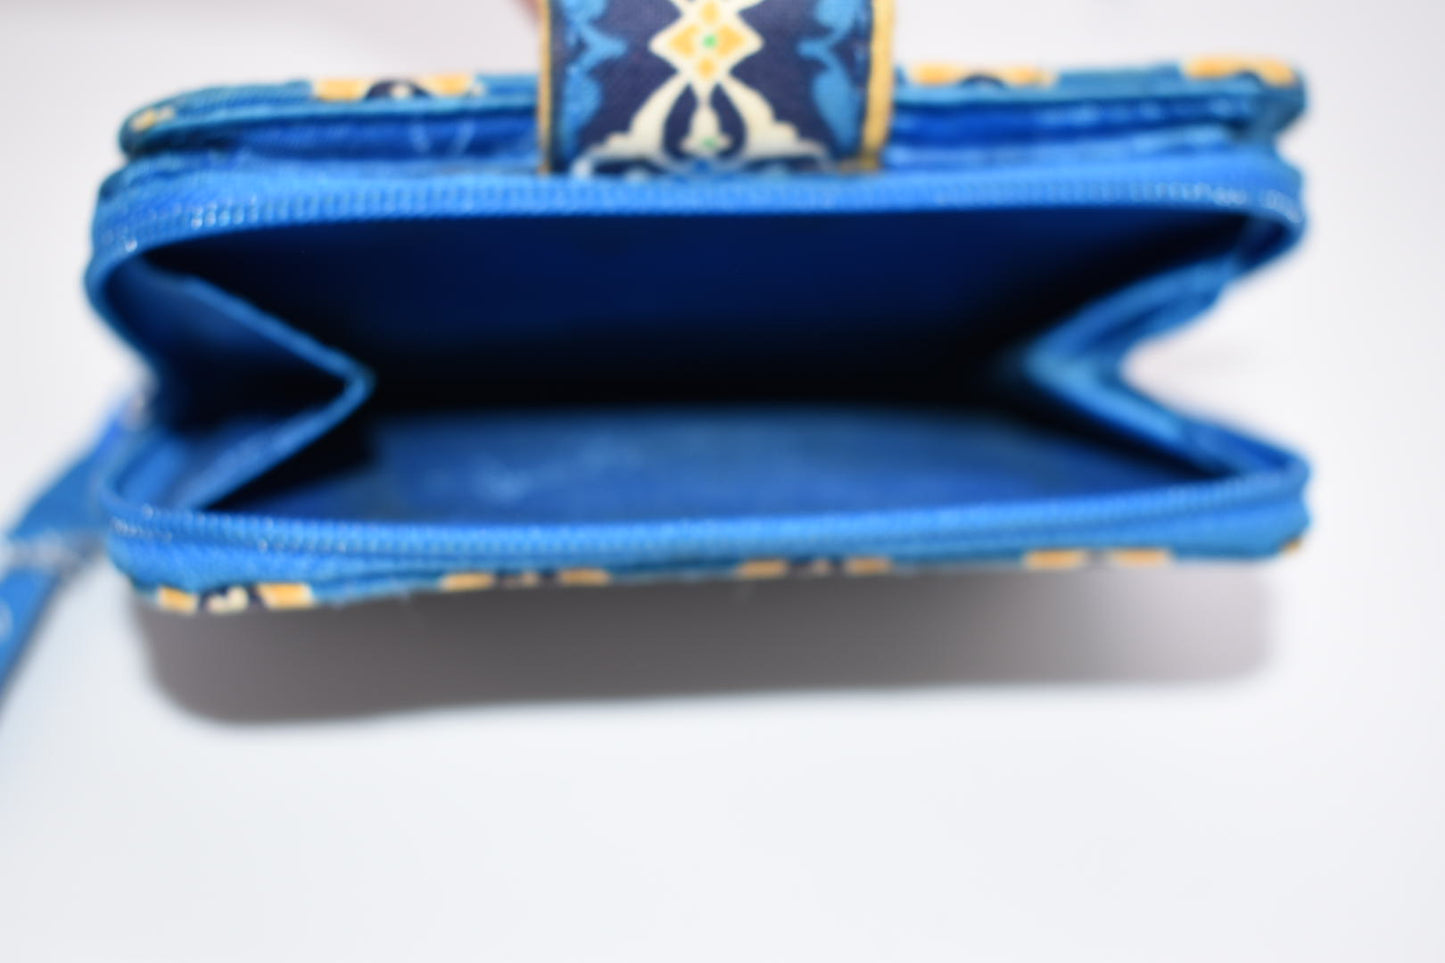 Vera Bradley Mini Zip Wallet in "Riviera Blue" Pattern